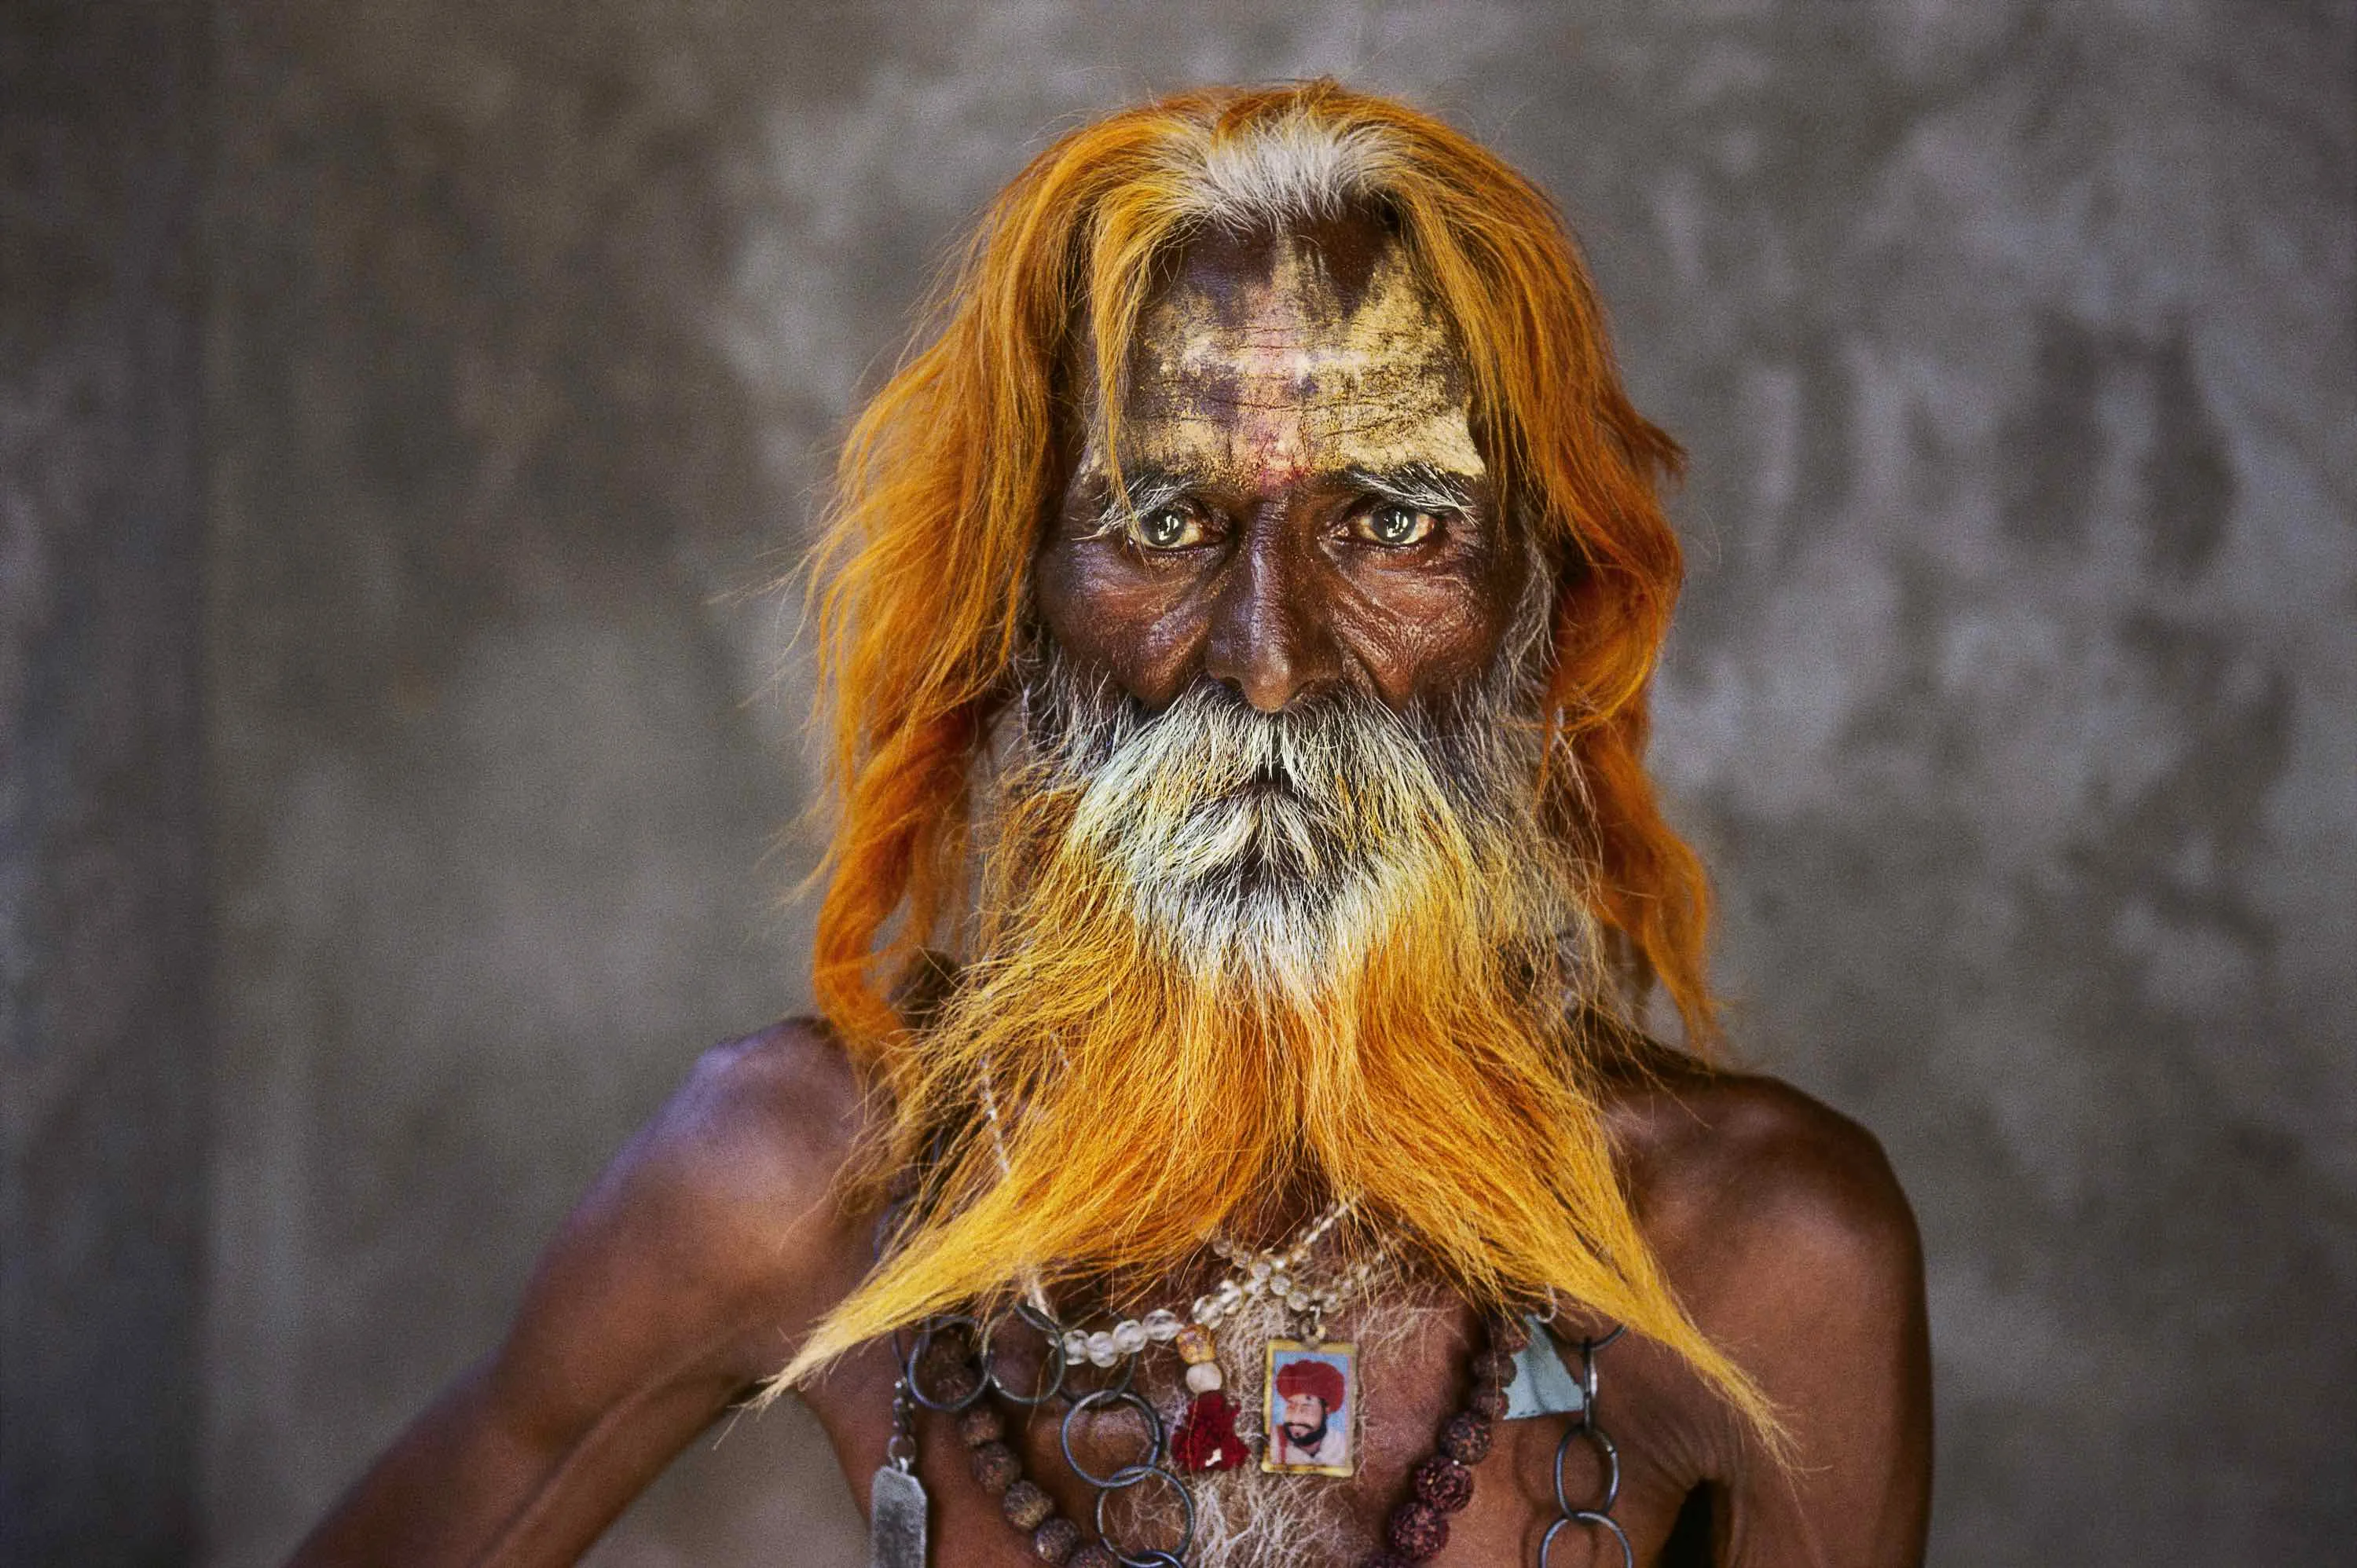 Самого странного человека. Стив МАККАРРИ. Стив МАККАРРИ фотограф. Стив МАККАРРИ Индия. Стив МАККАРРИ (Steve MCCURRY) фотограф.